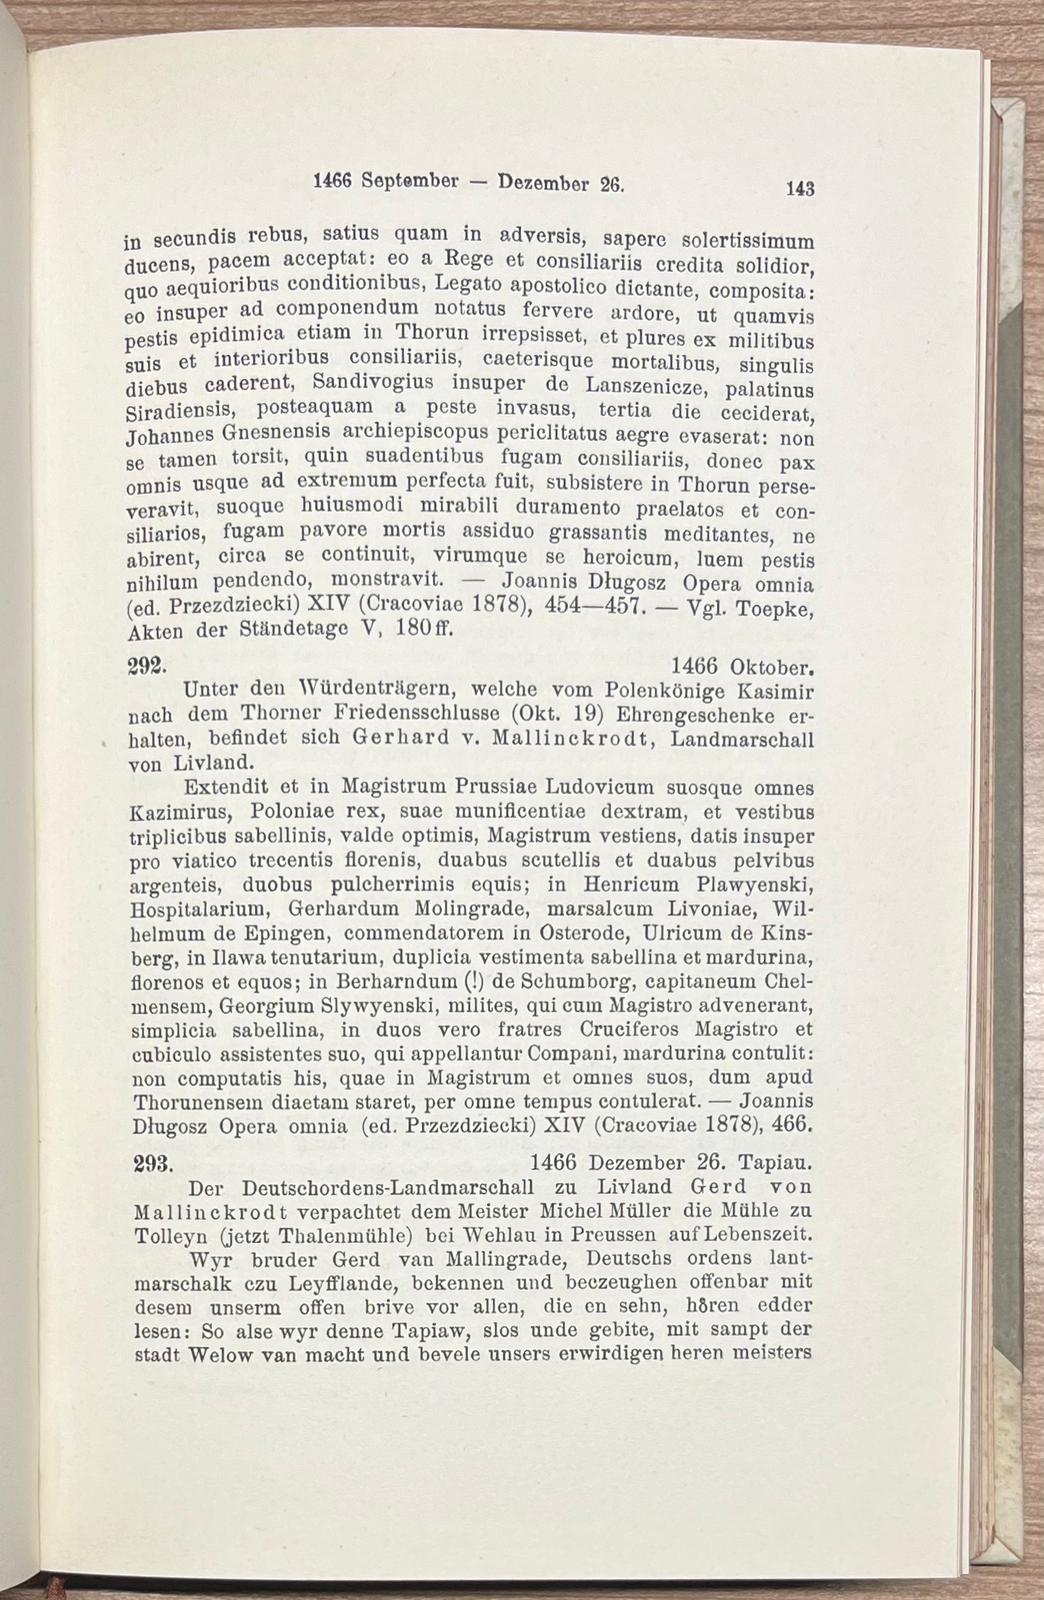 Heraldry, 1911, Mallinckrot | Urkundenbuch der Familie von Rallinckrodt, als manuskript gedruckt. I. Band. Bonn, Carl Georgi, 1911, (19)479 pp.